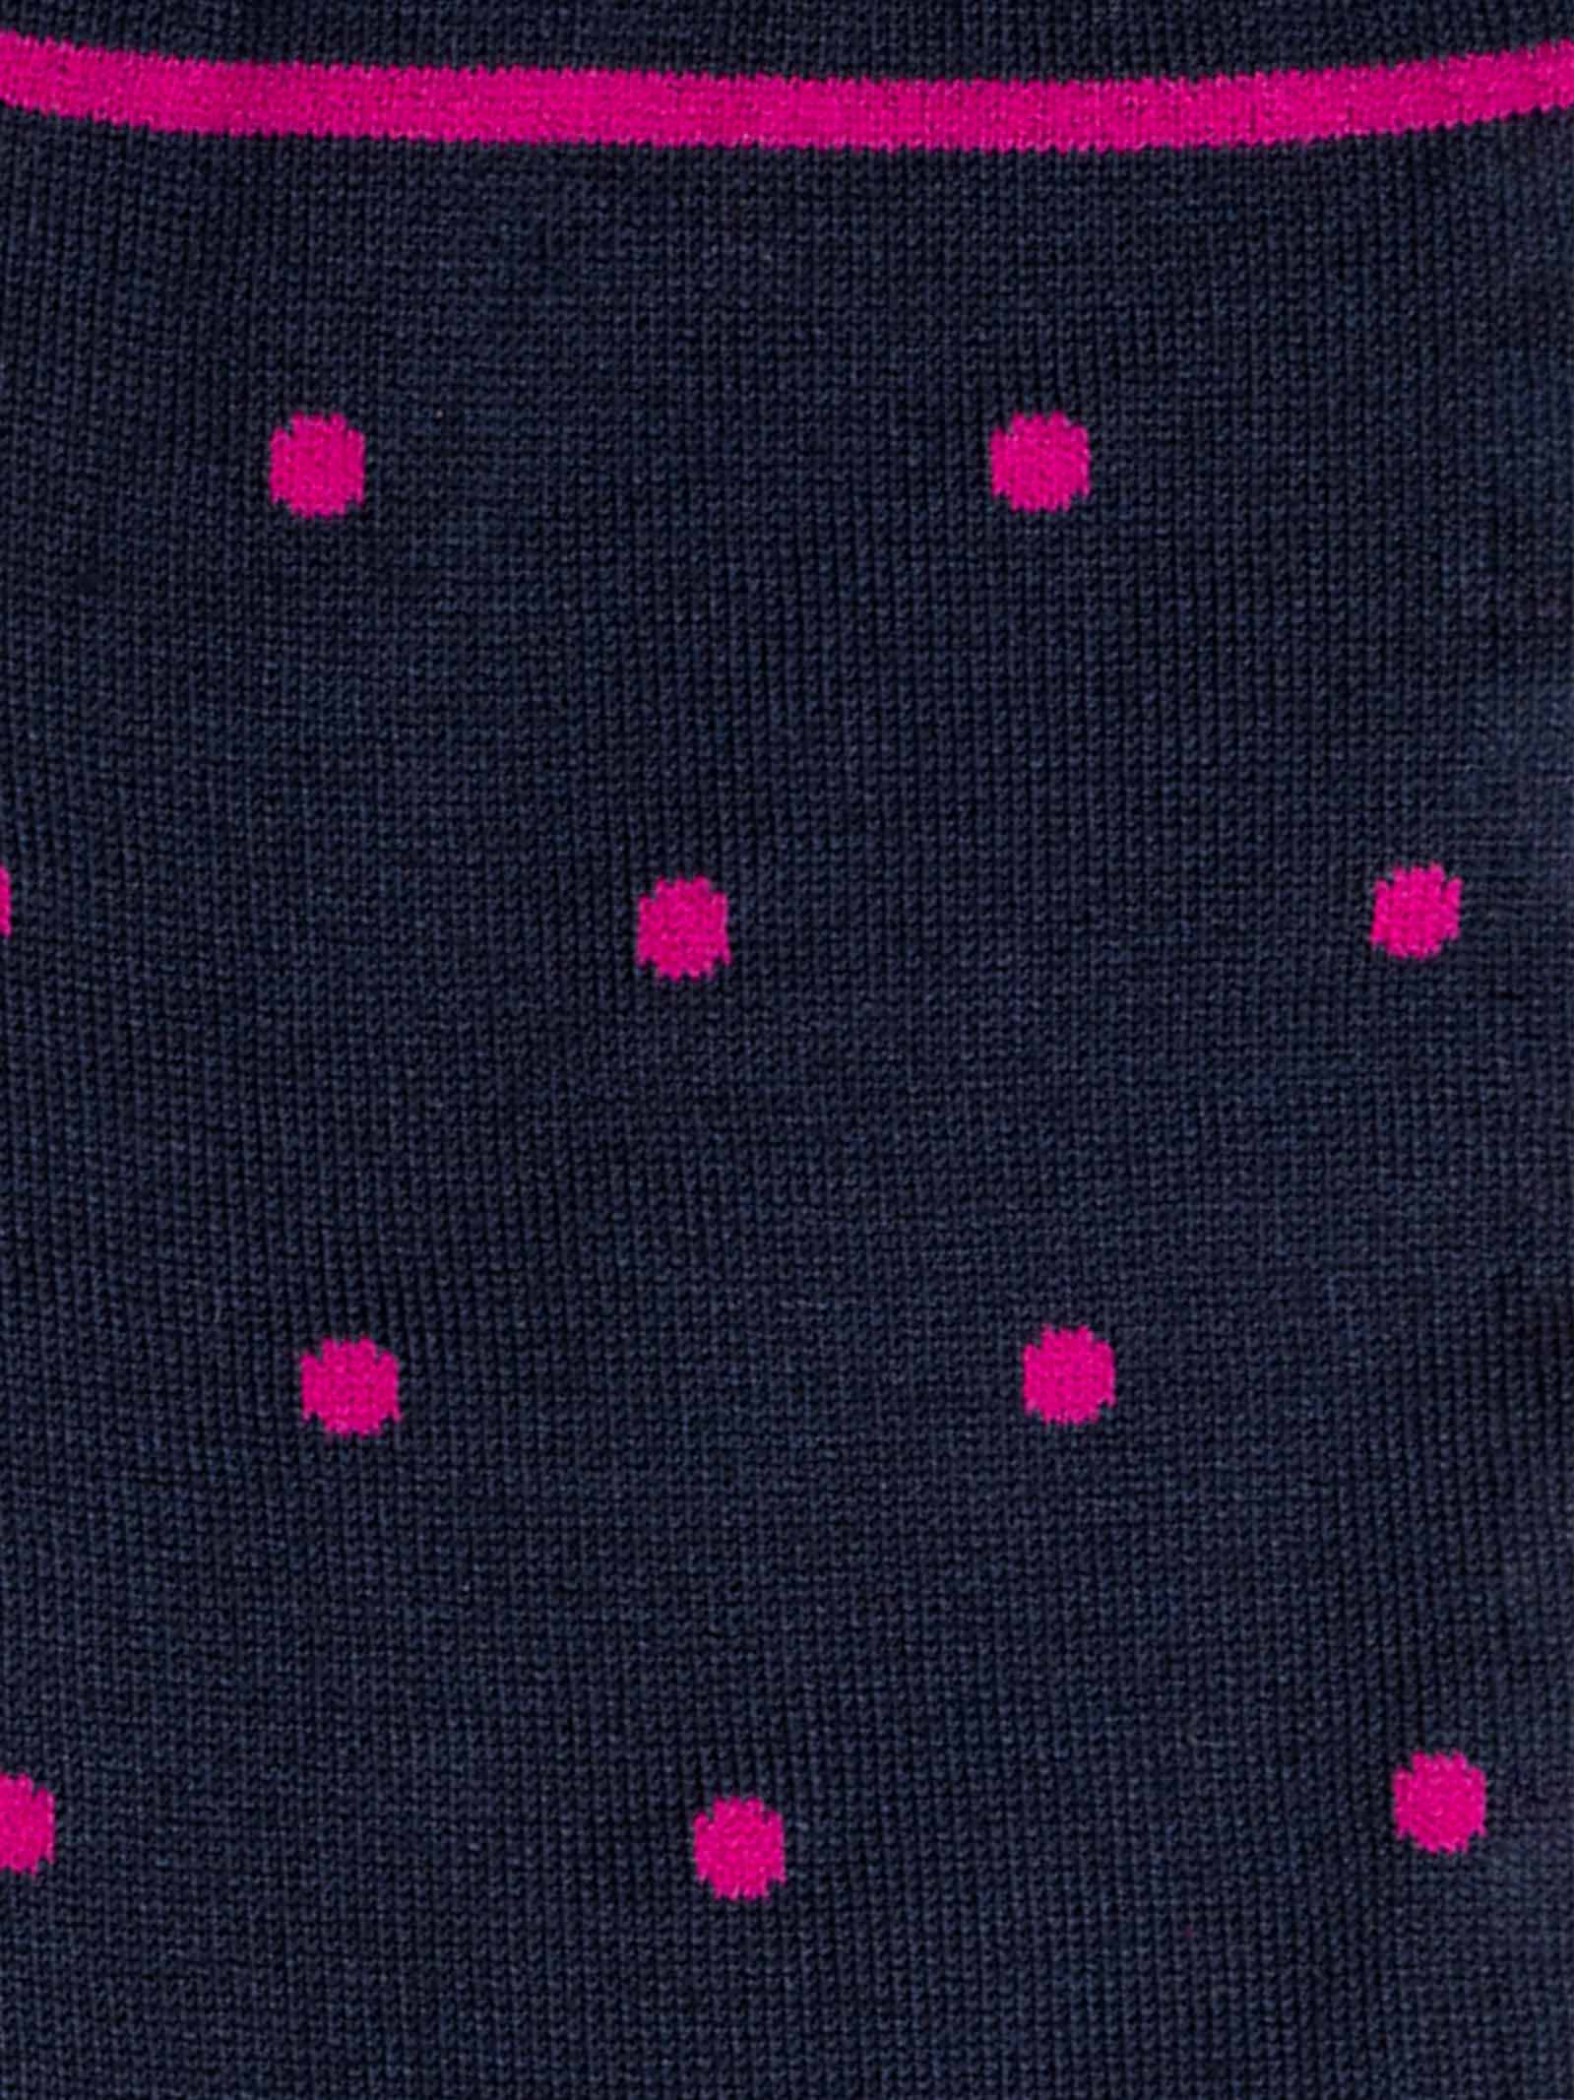 Lange Socken mit Polka-Dot-Muster aus frischer Baumwolle für Herren